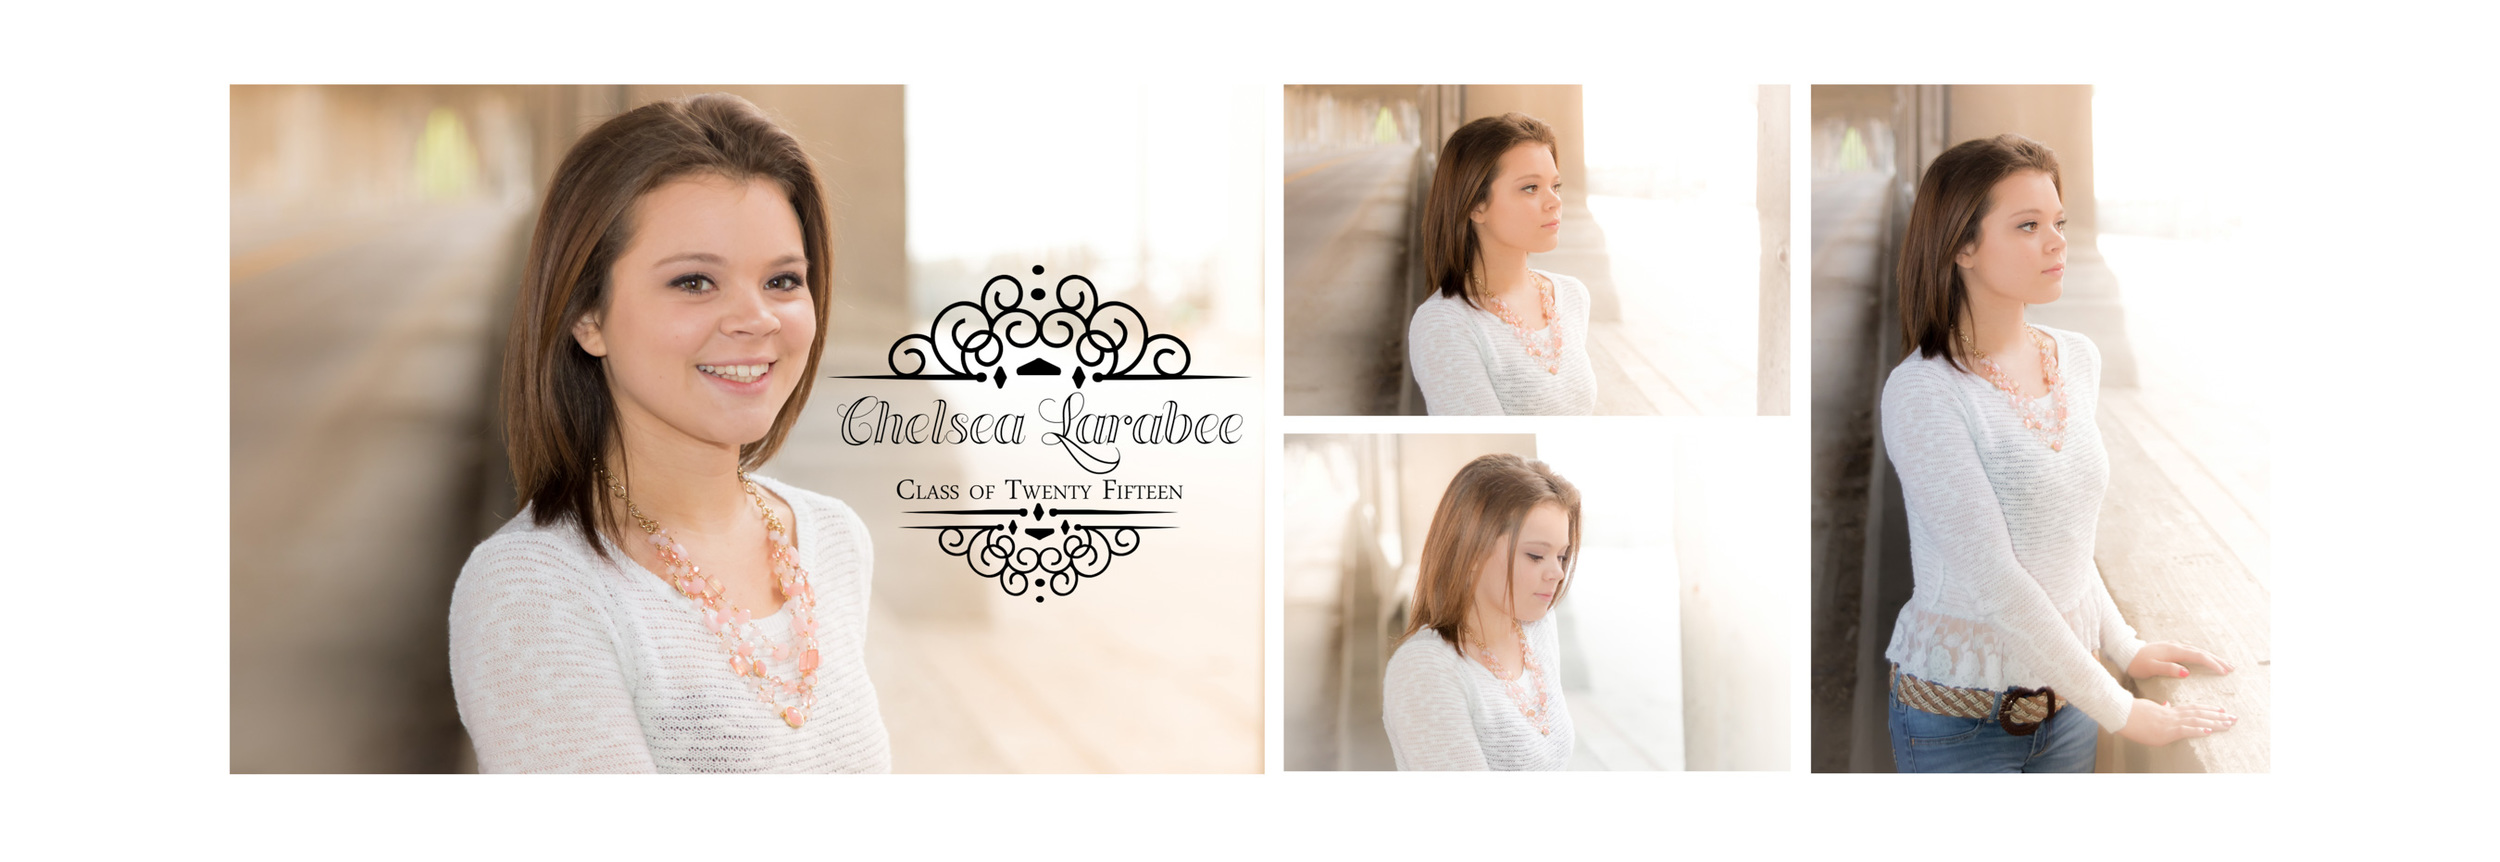 Chelsea Larabee Senior CatsEye Photography 2015 Banner 1.jpg